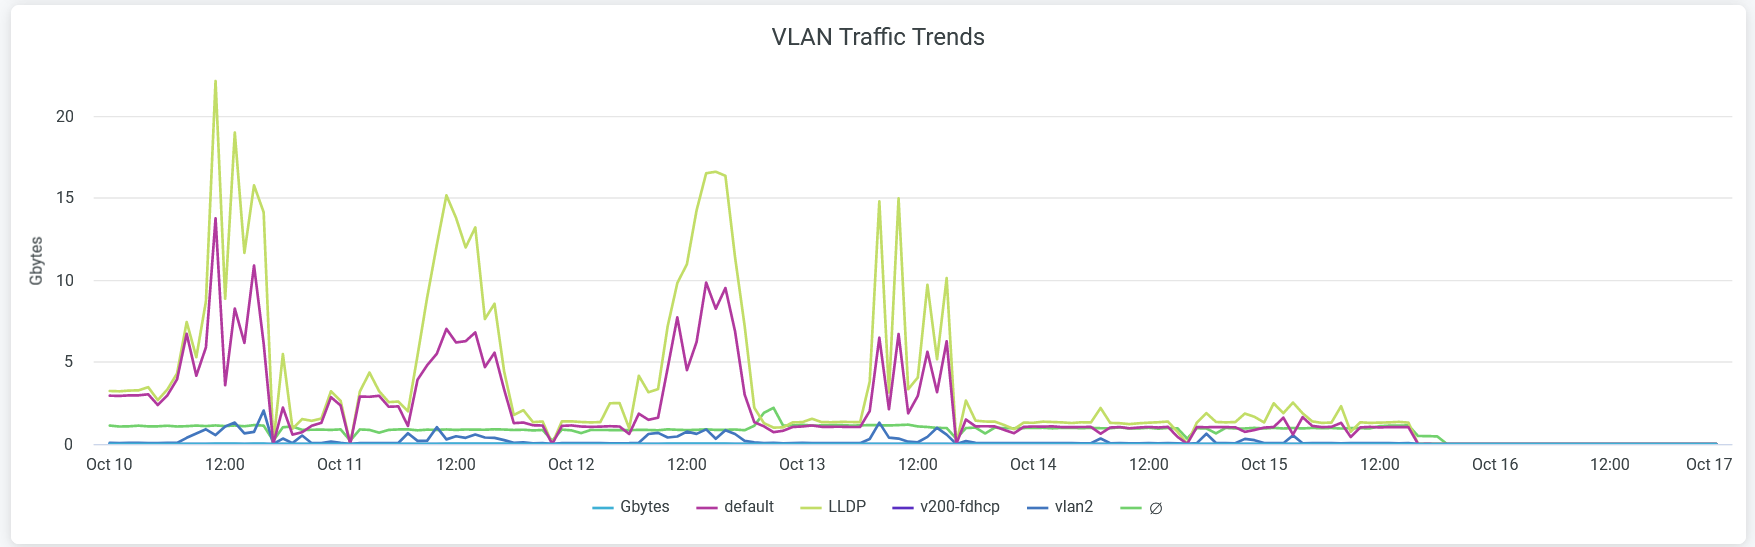 VLAN Traffic Trends